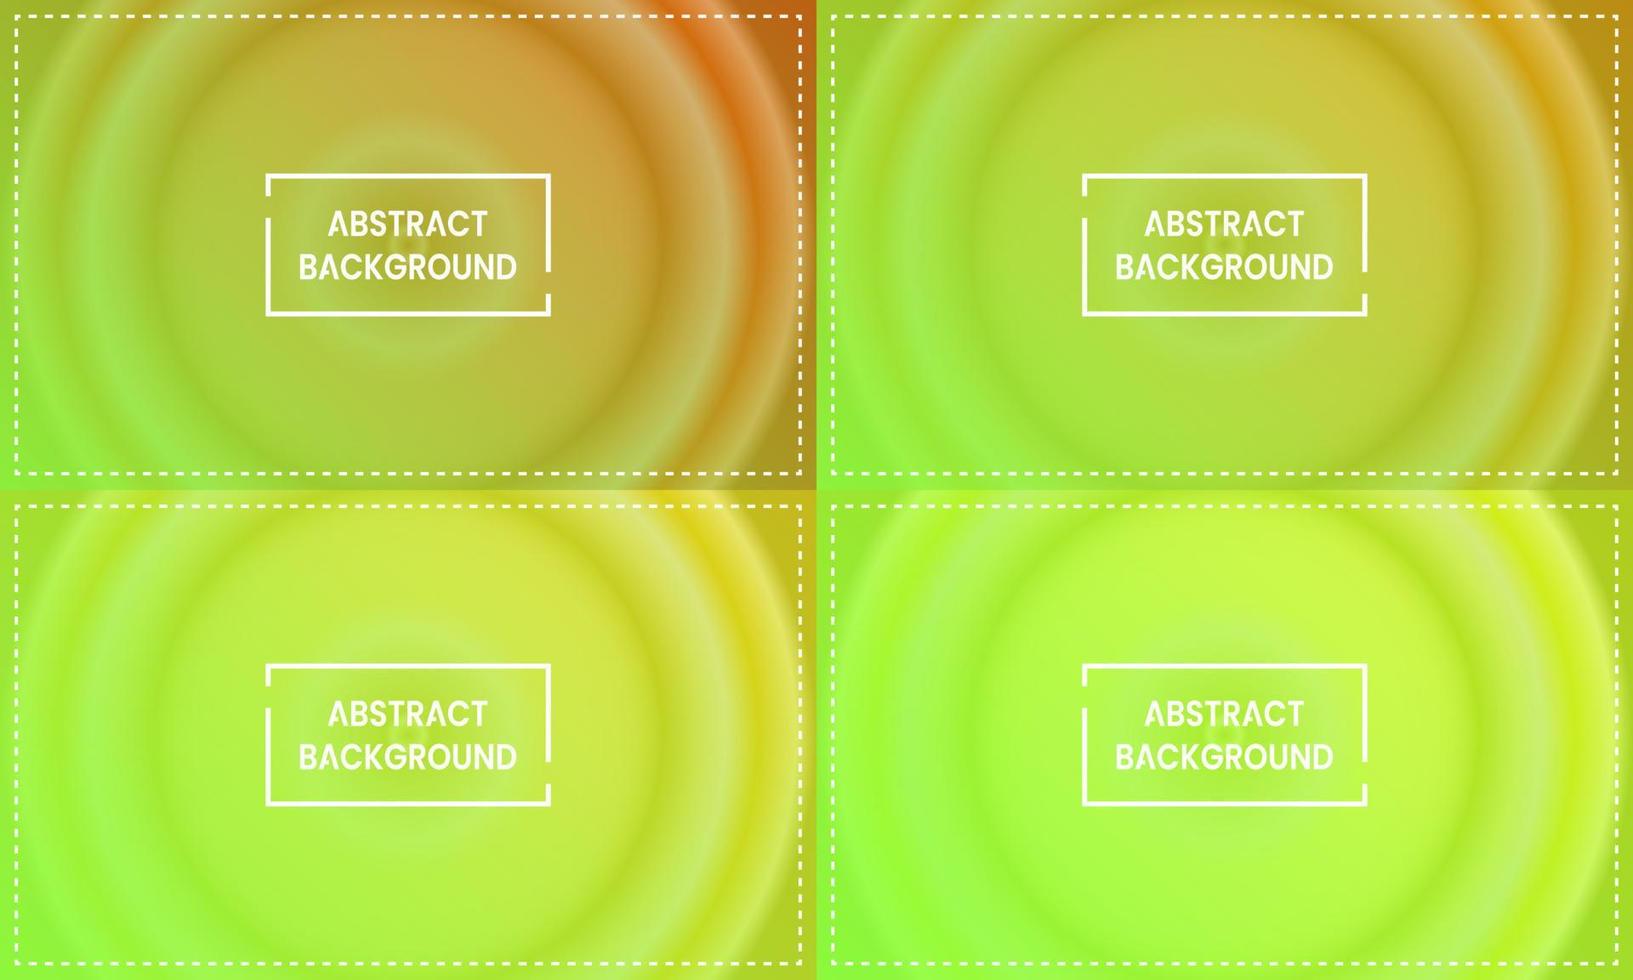 quatre ensembles de fond abstrait dégradé radial cercle vert clair avec cadre. style flou, brillant, moderne et coloré. vert, jaune et orange. utiliser pour la page d'accueil, la toile de fond, le fond d'écran, la bannière ou le dépliant vecteur